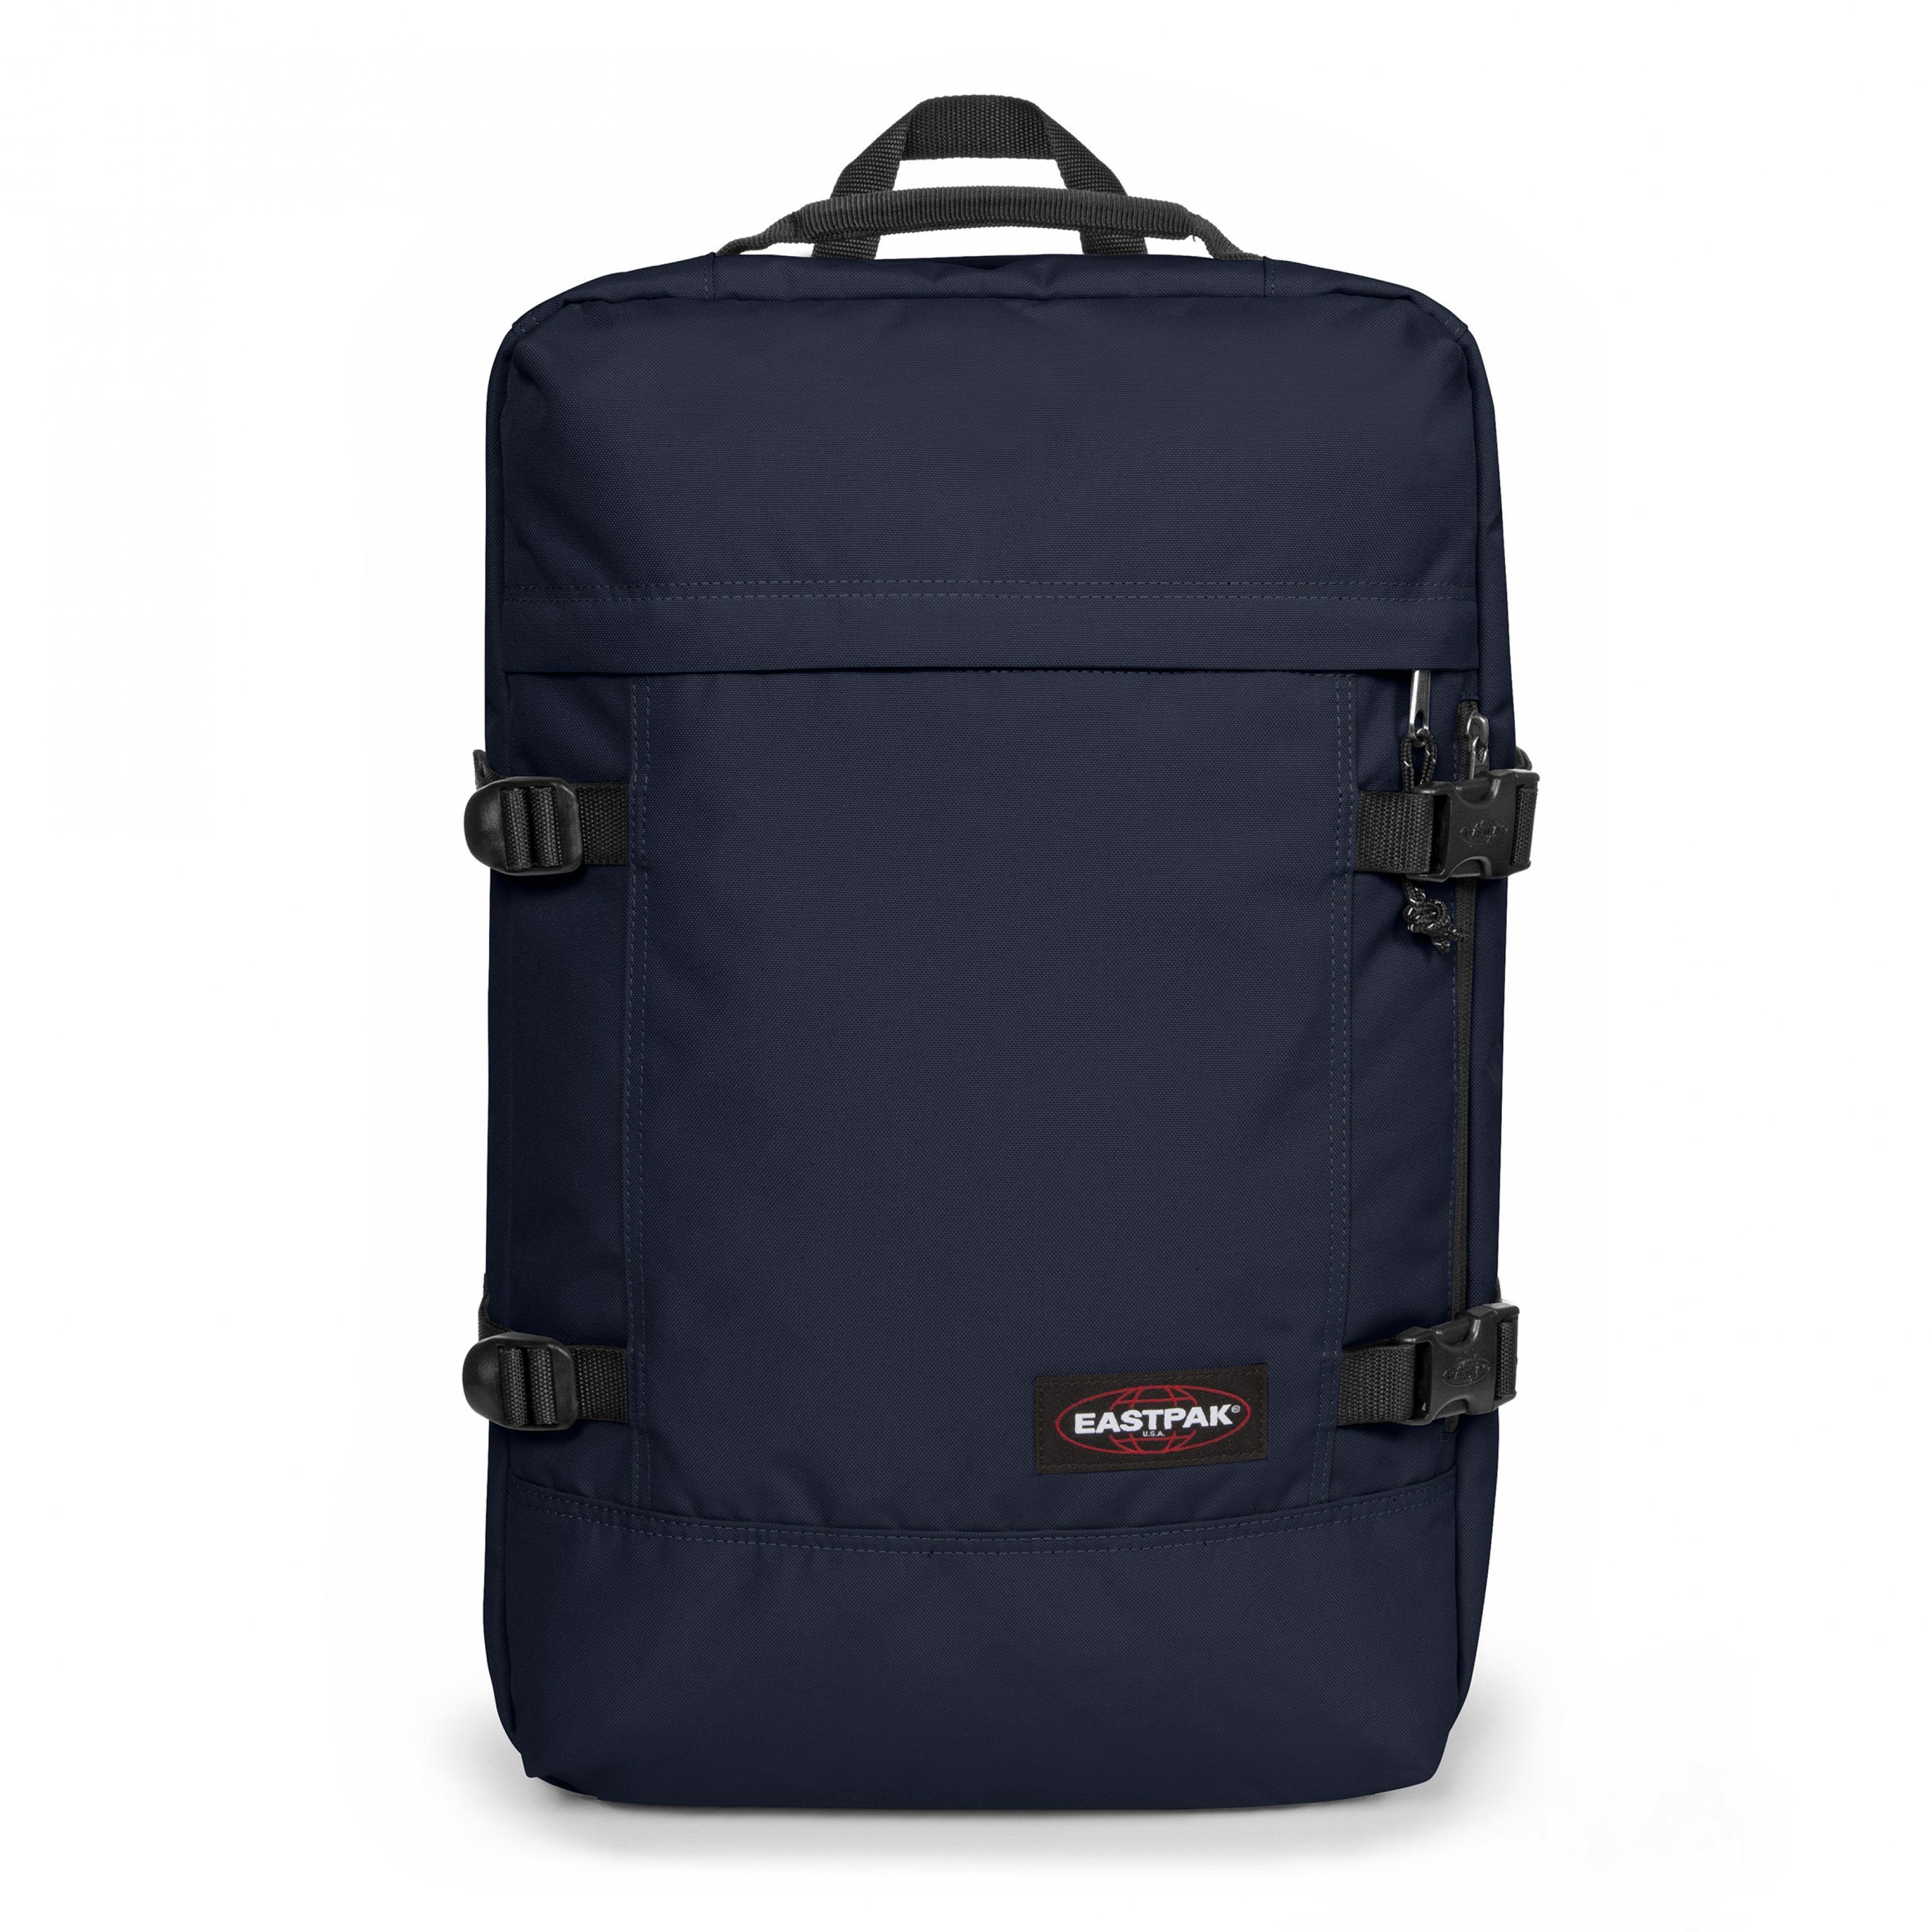 EASTPAK-Travelpack-Large backpack with laptop sleeve-Ultra Marine-EK0A5BBRL831